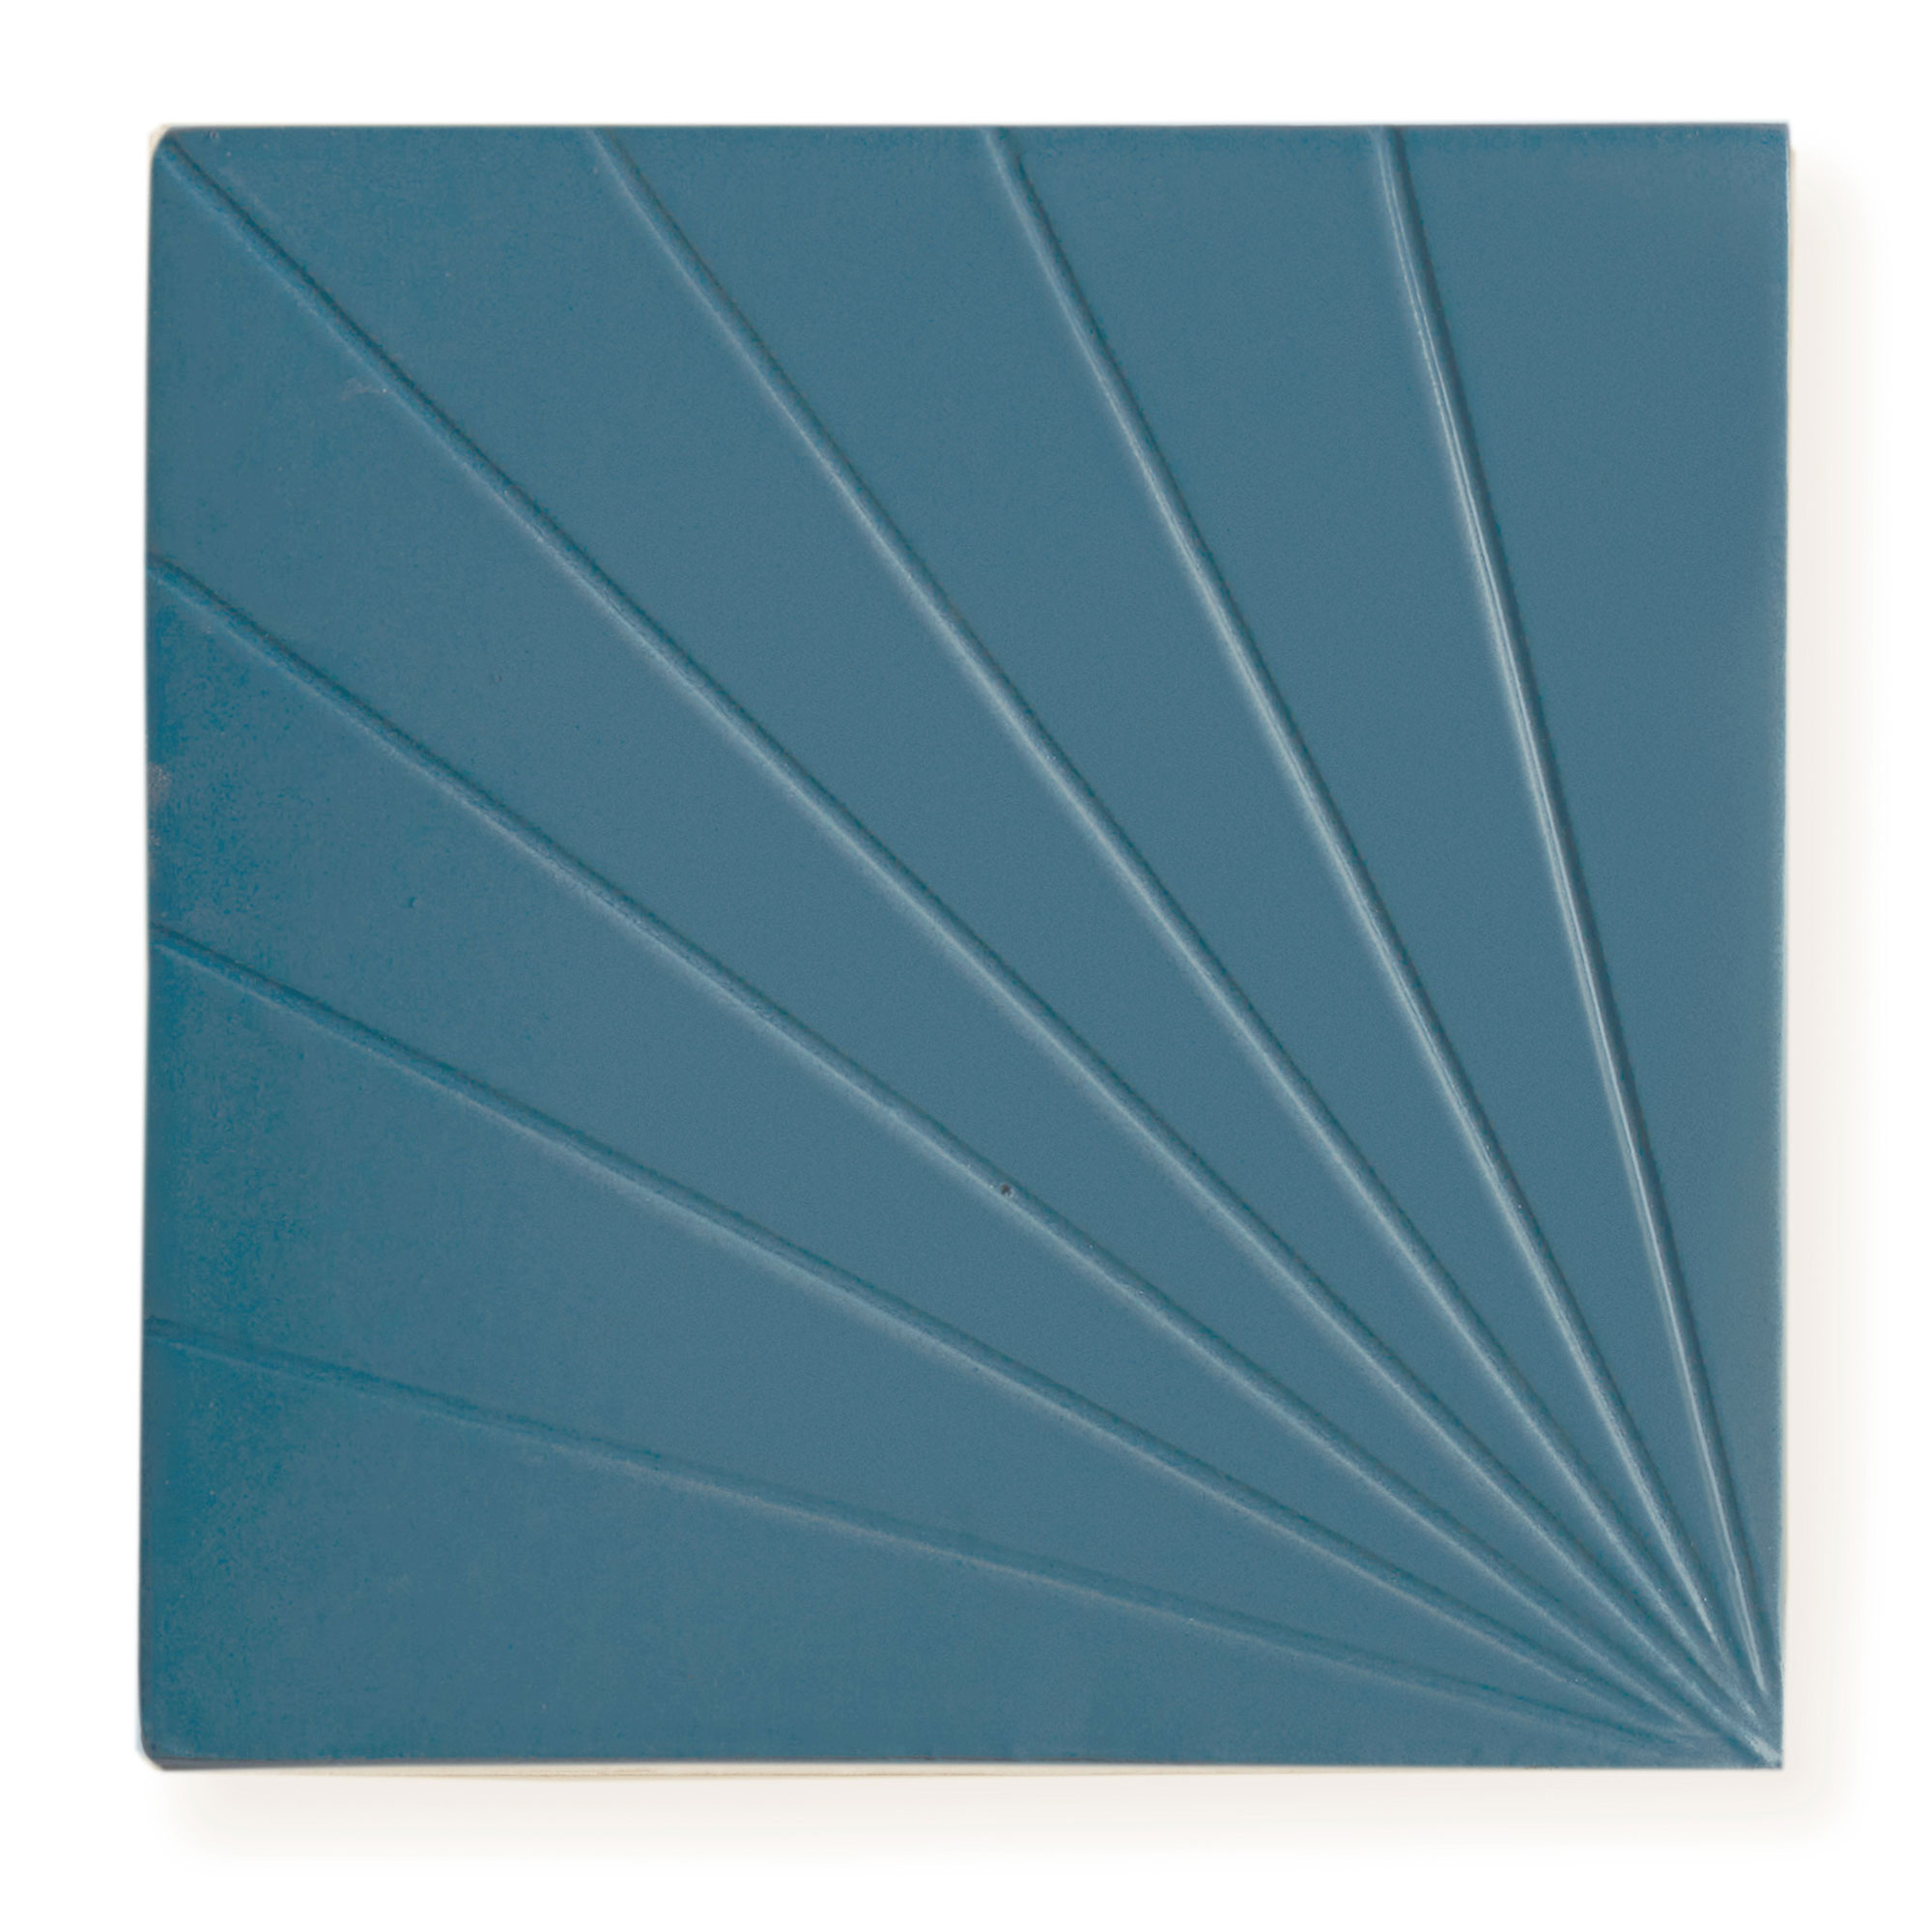 Tulum Blue 6x6 - Dimensional Relief Artisan Ceramic Tile